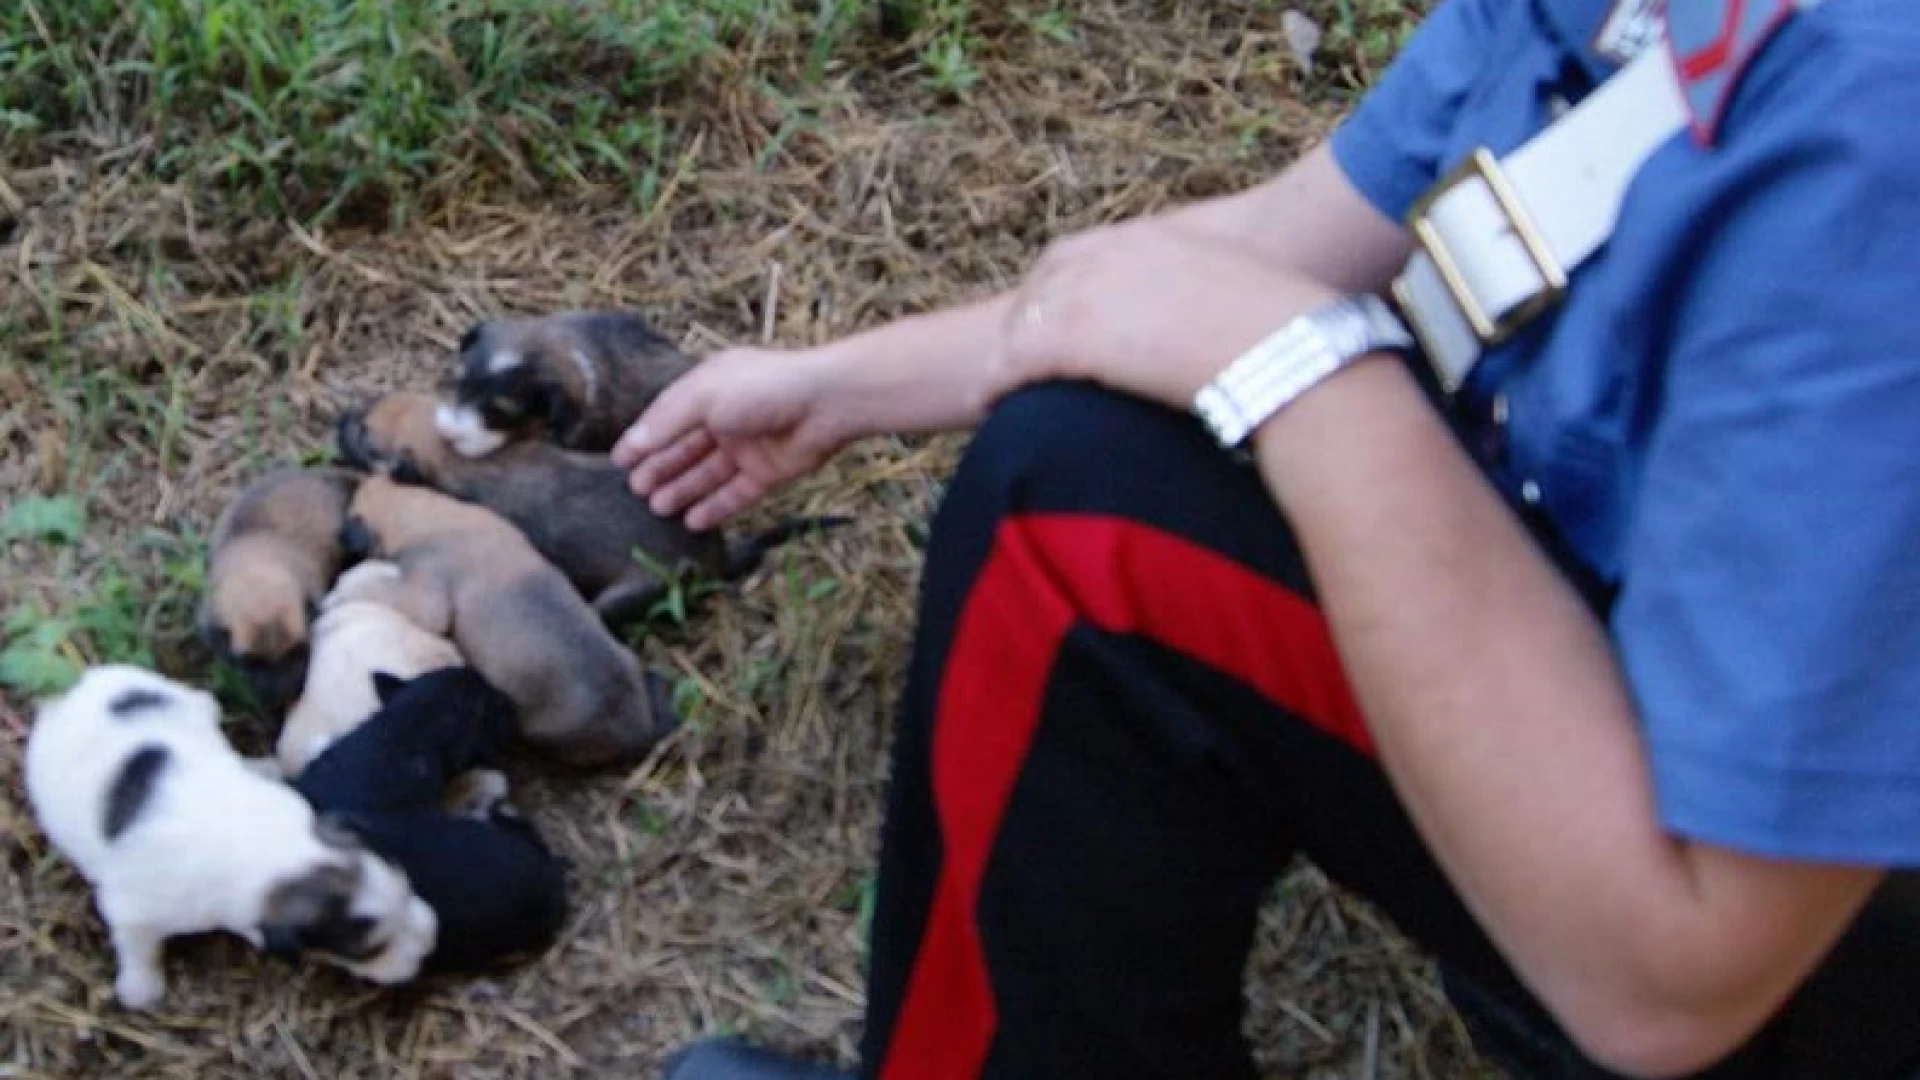 Isernia: Cuccioli di cane abbandonati da ignoti, per fortuna vengono trovati e salvati dai Carabinieri.